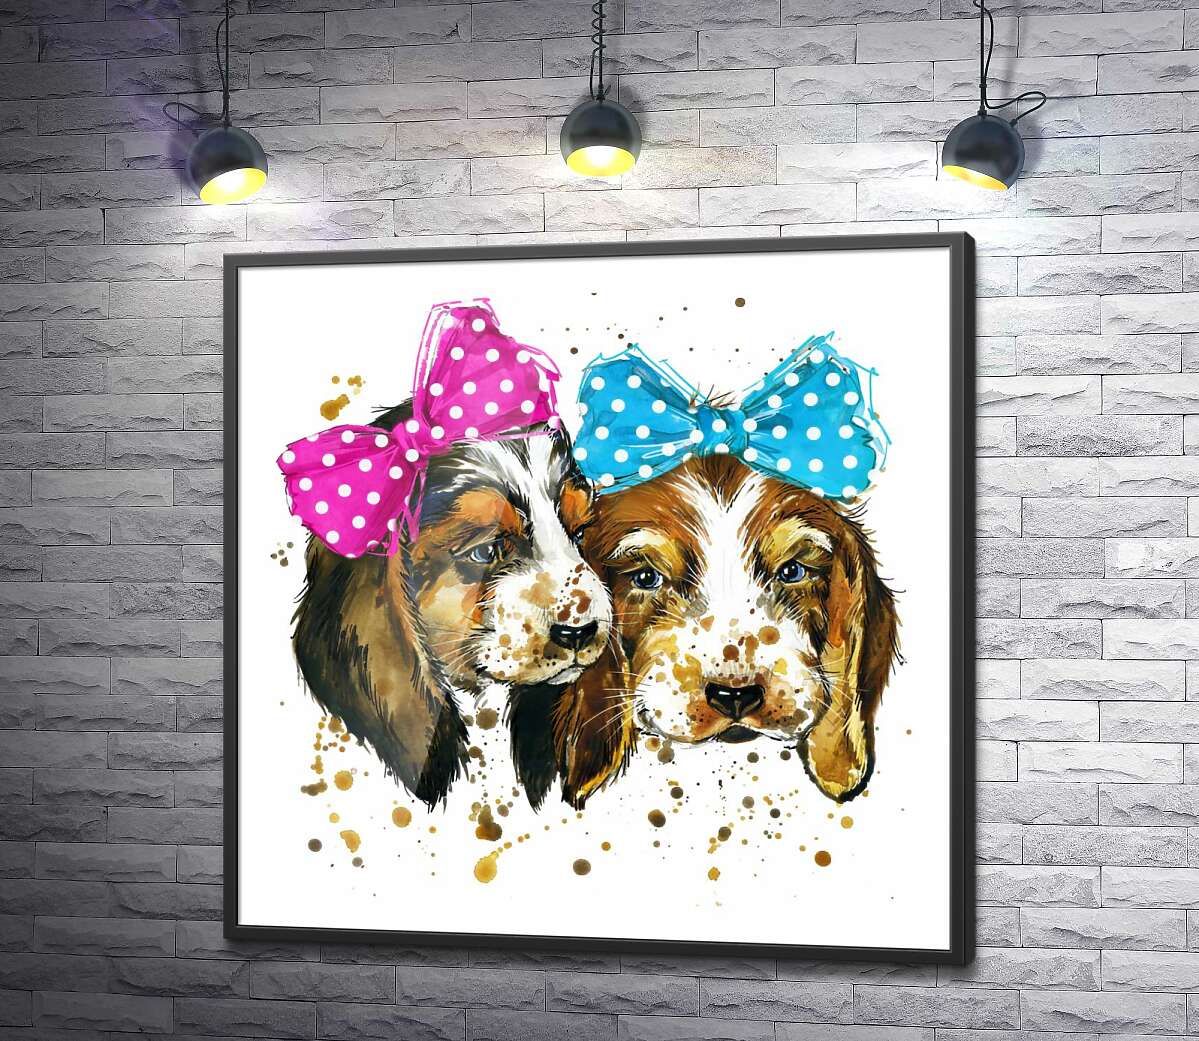 постер Два милых щенка бигля с бантиками на голове